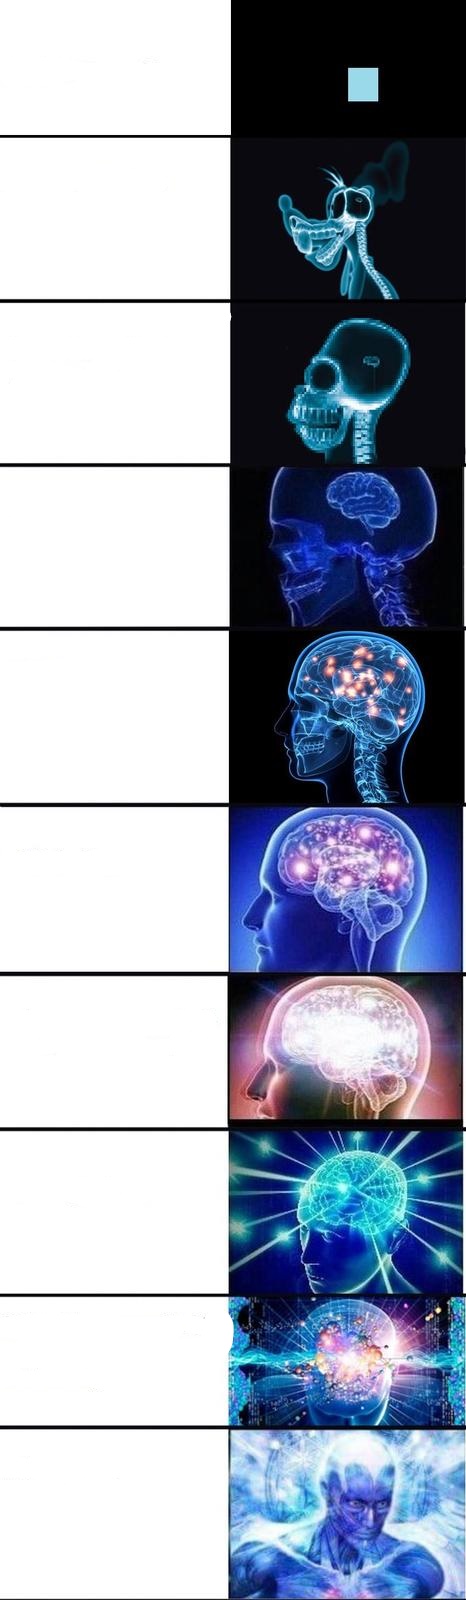 Expanding Brain V2 Blank Meme Template